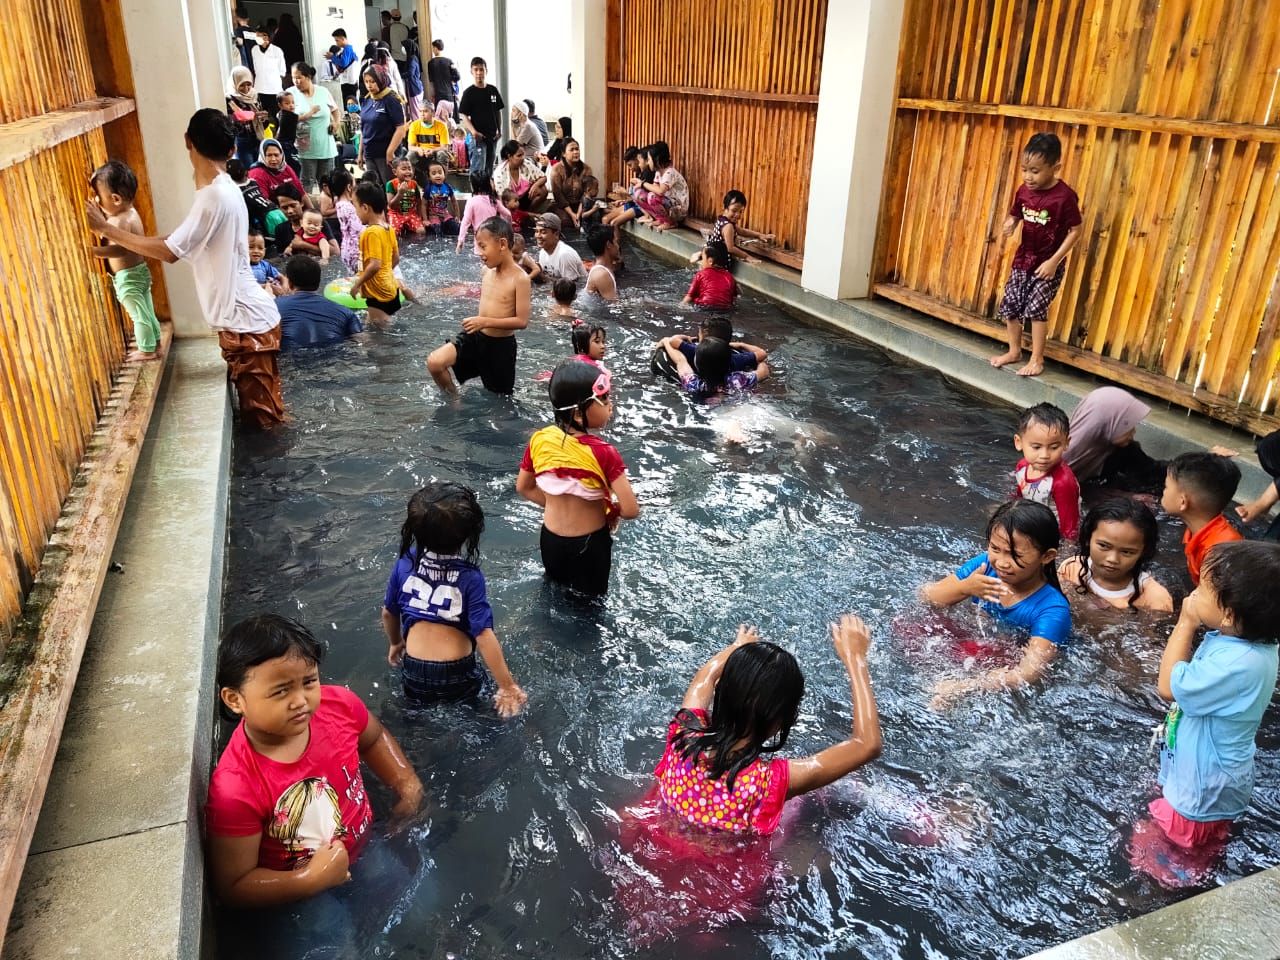 Sejumlah pengunjunh kalangan anak-anak terlihat asik berenang dan berendam di kolam air panas.